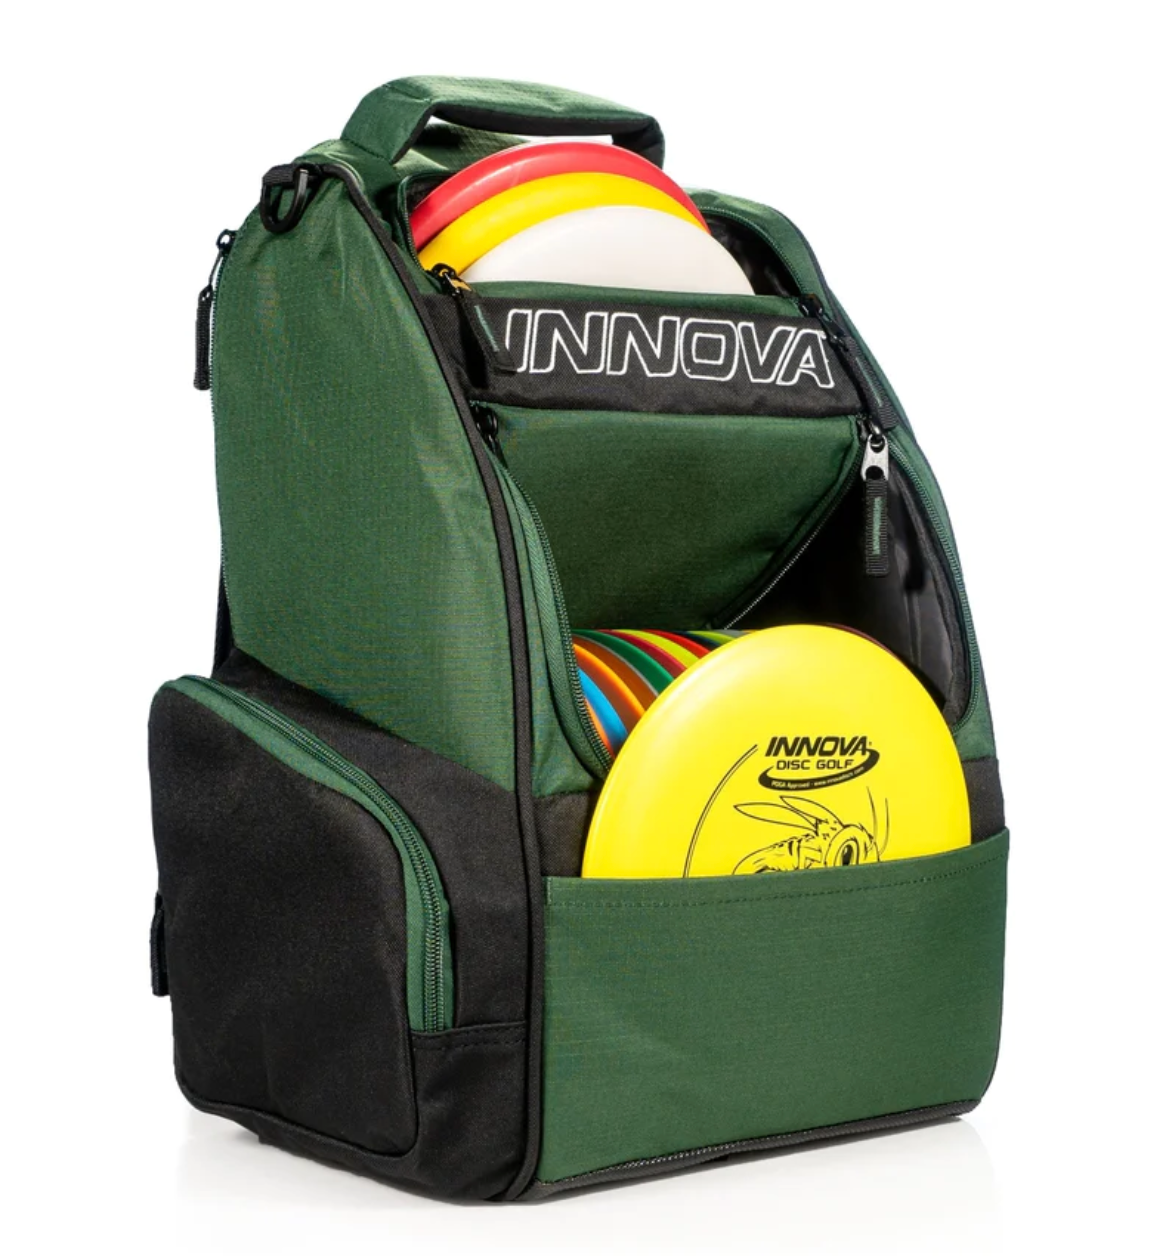 DGA Trvrs LT Disc Golf Backpack Bag